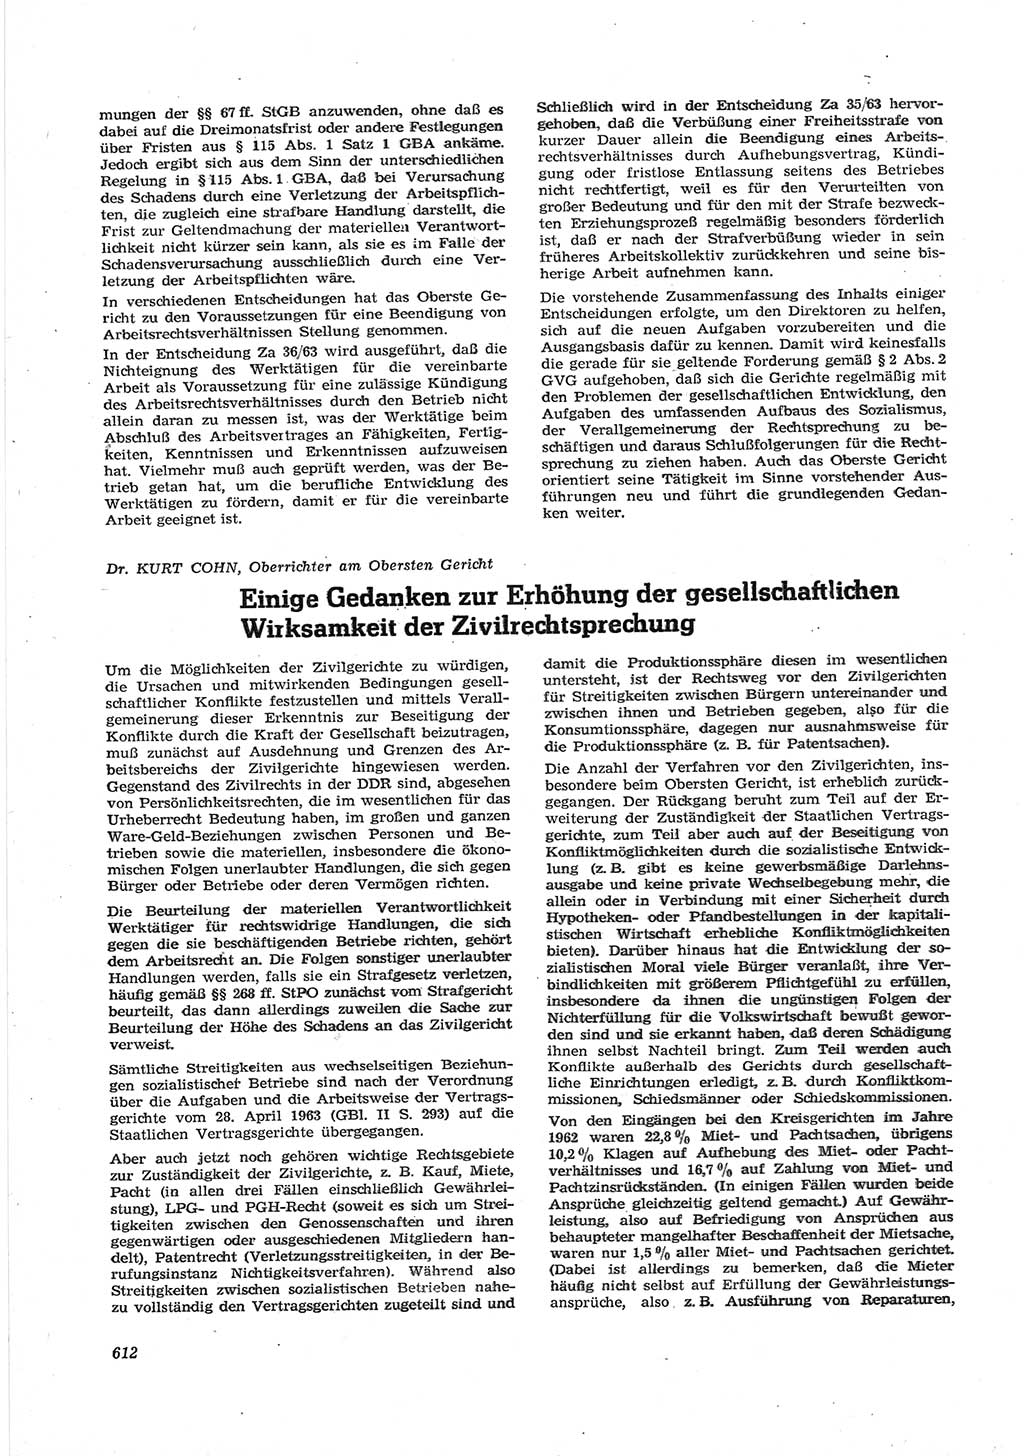 Neue Justiz (NJ), Zeitschrift für Recht und Rechtswissenschaft [Deutsche Demokratische Republik (DDR)], 17. Jahrgang 1963, Seite 612 (NJ DDR 1963, S. 612)